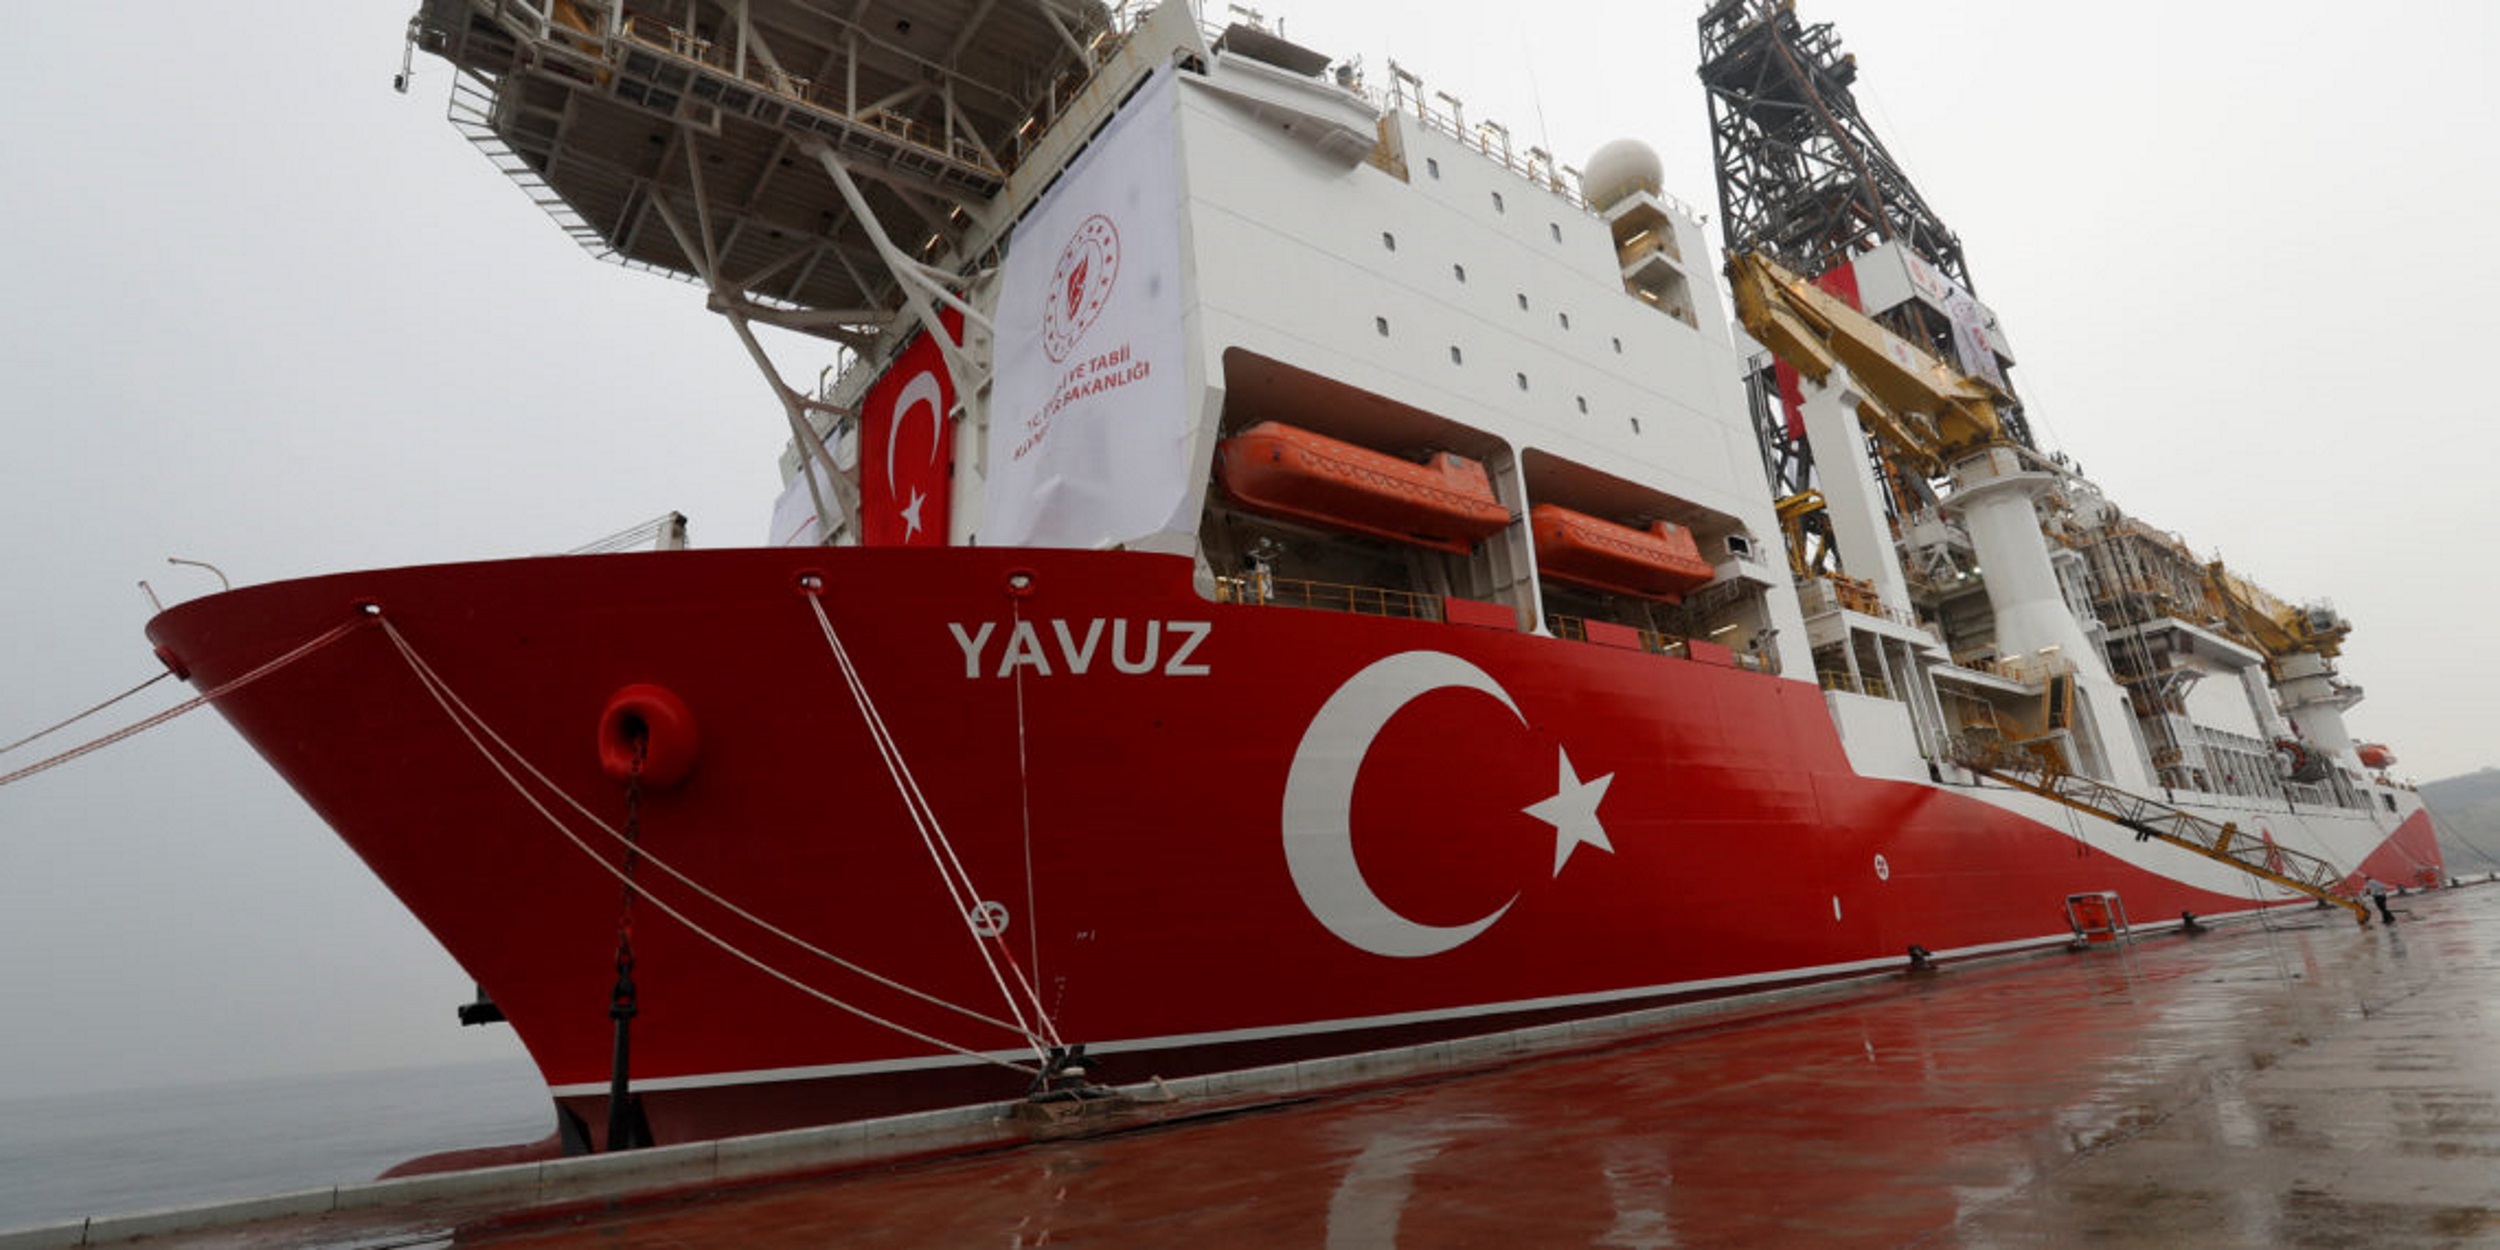 Τούρκος υπουργός Ενέργειας: Έρχονται σημαντικές εξελίξεις στην Ανατολική Μεσόγειο σχετικά με το φυσικό αέριο